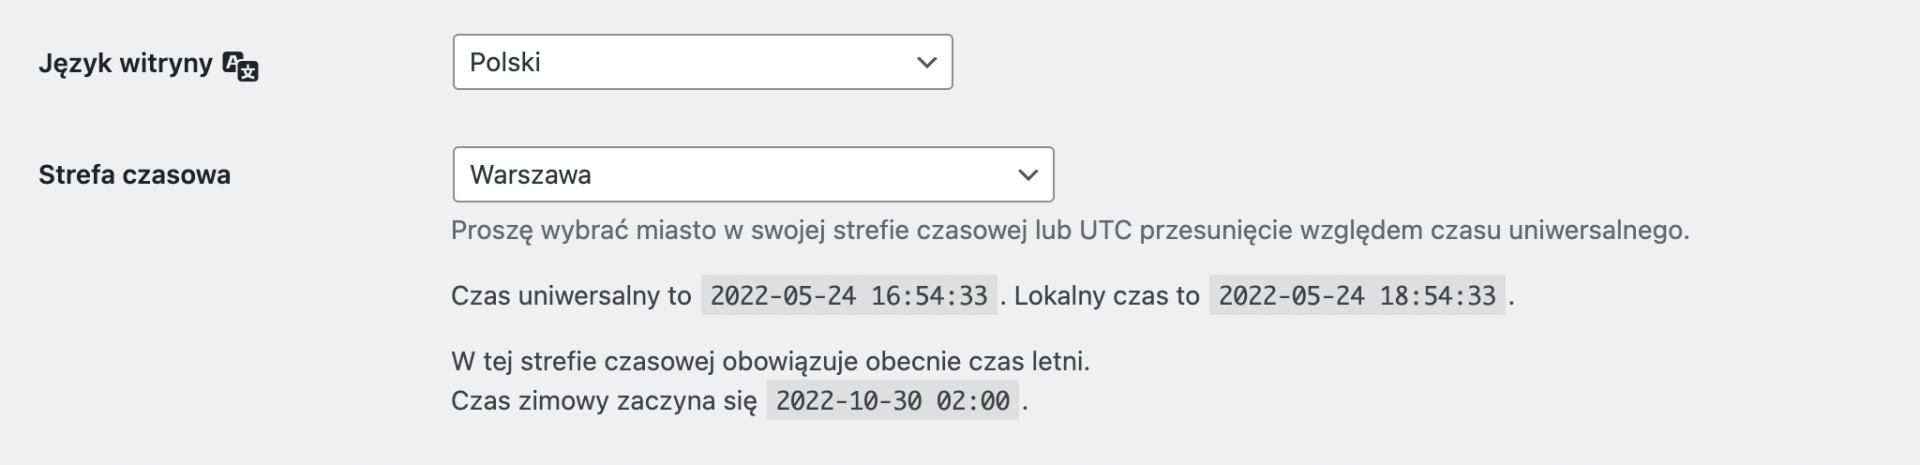 Ustawienie języka polskiego w WordPress